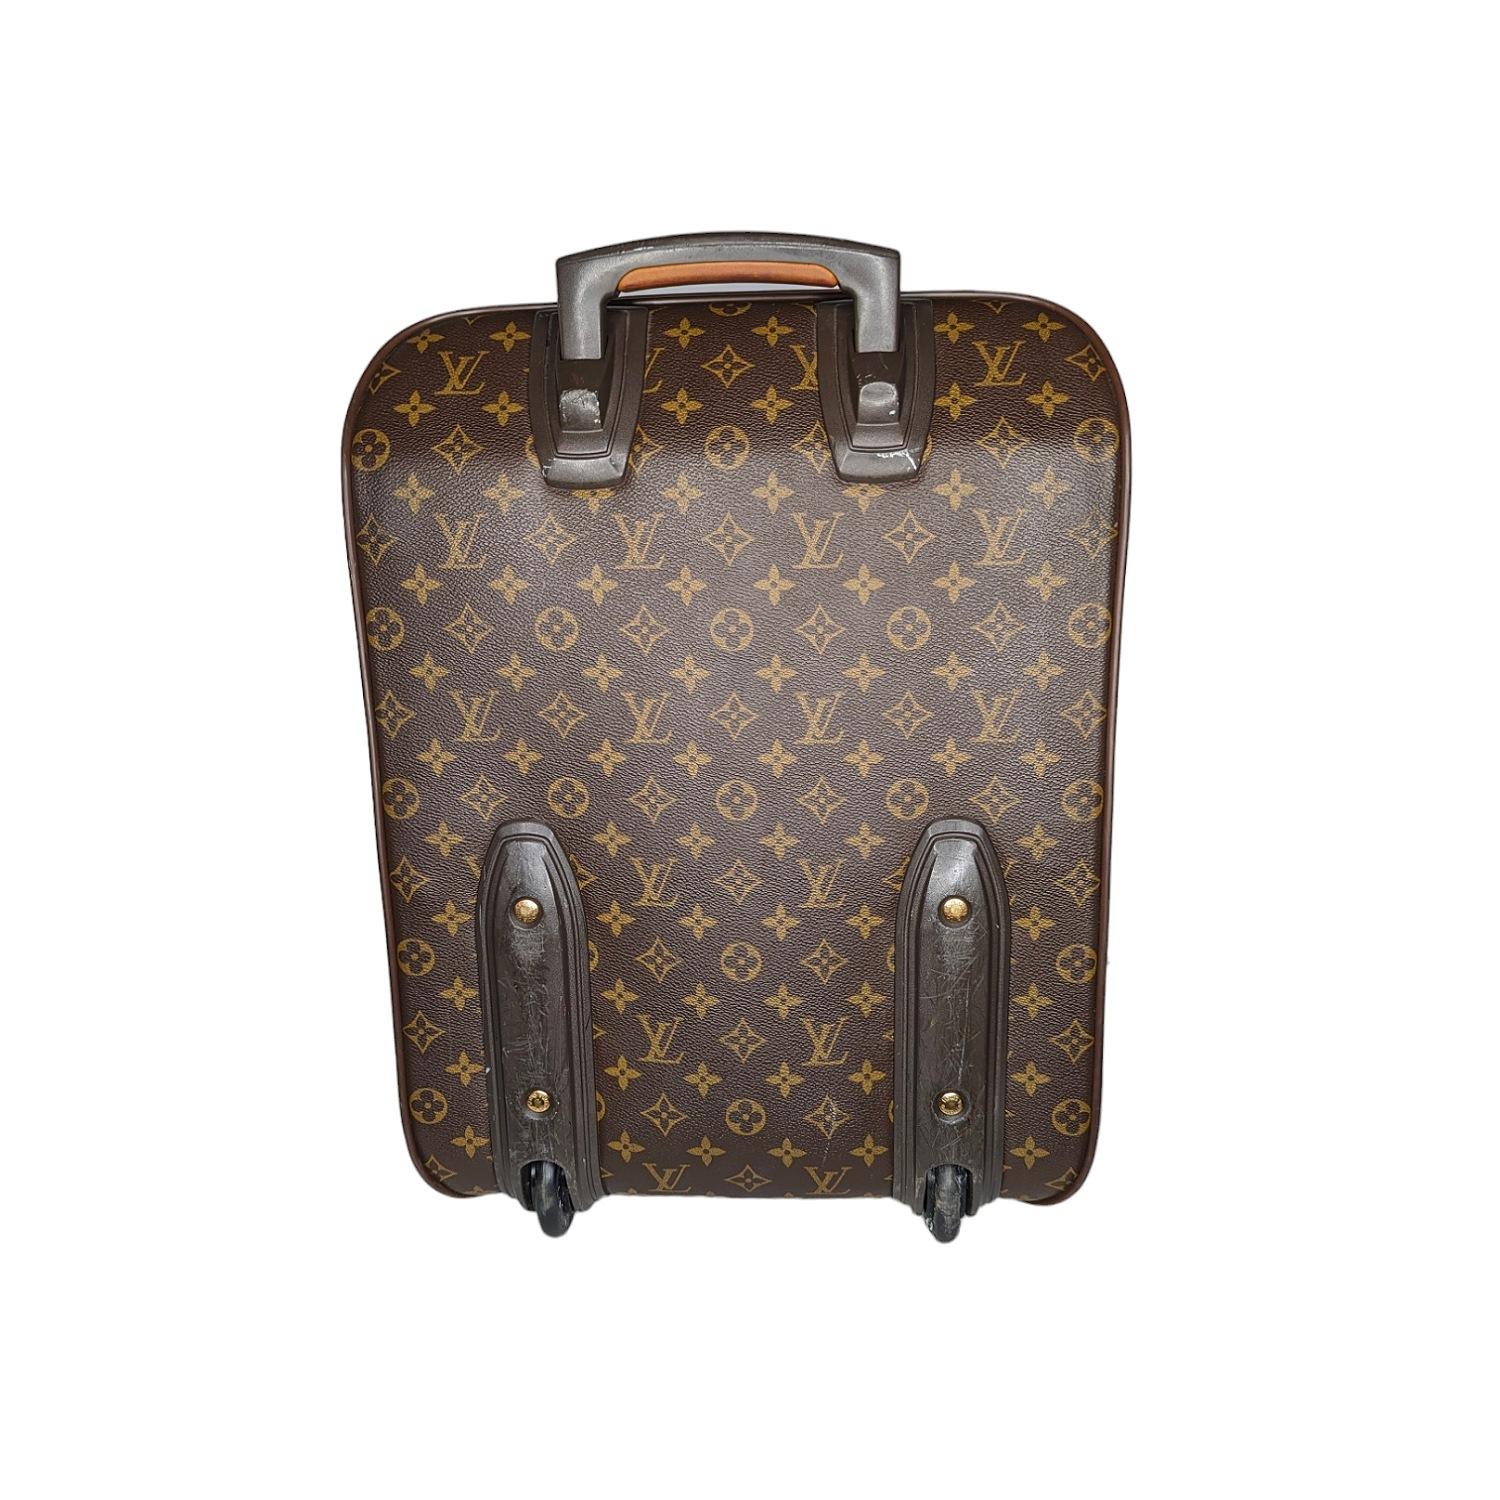 Cette élégante valise est finement fabriquée en toile enduite du monogramme classique de Louis Vuitton. Le sac est doté d'une poche frontale profonde avec un compartiment zippé caché, d'une garniture en cuir de vachette vachette, d'une poignée